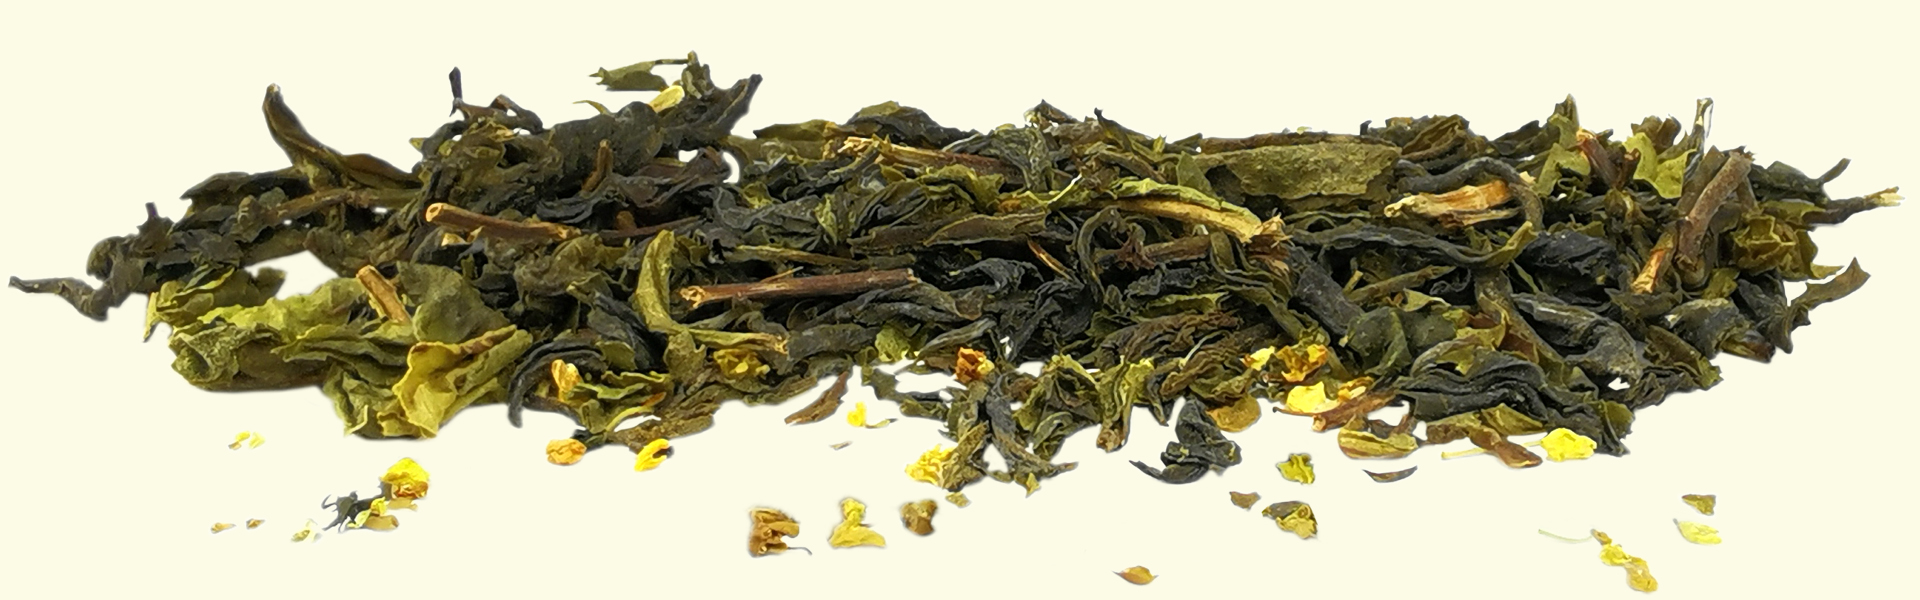 Un thé Assam vert en feuilles non roulées, mélangé avec des fleurs d'Osmanthus : un thé aux arômes floraux marqués, facile à préparer & à apprécier.